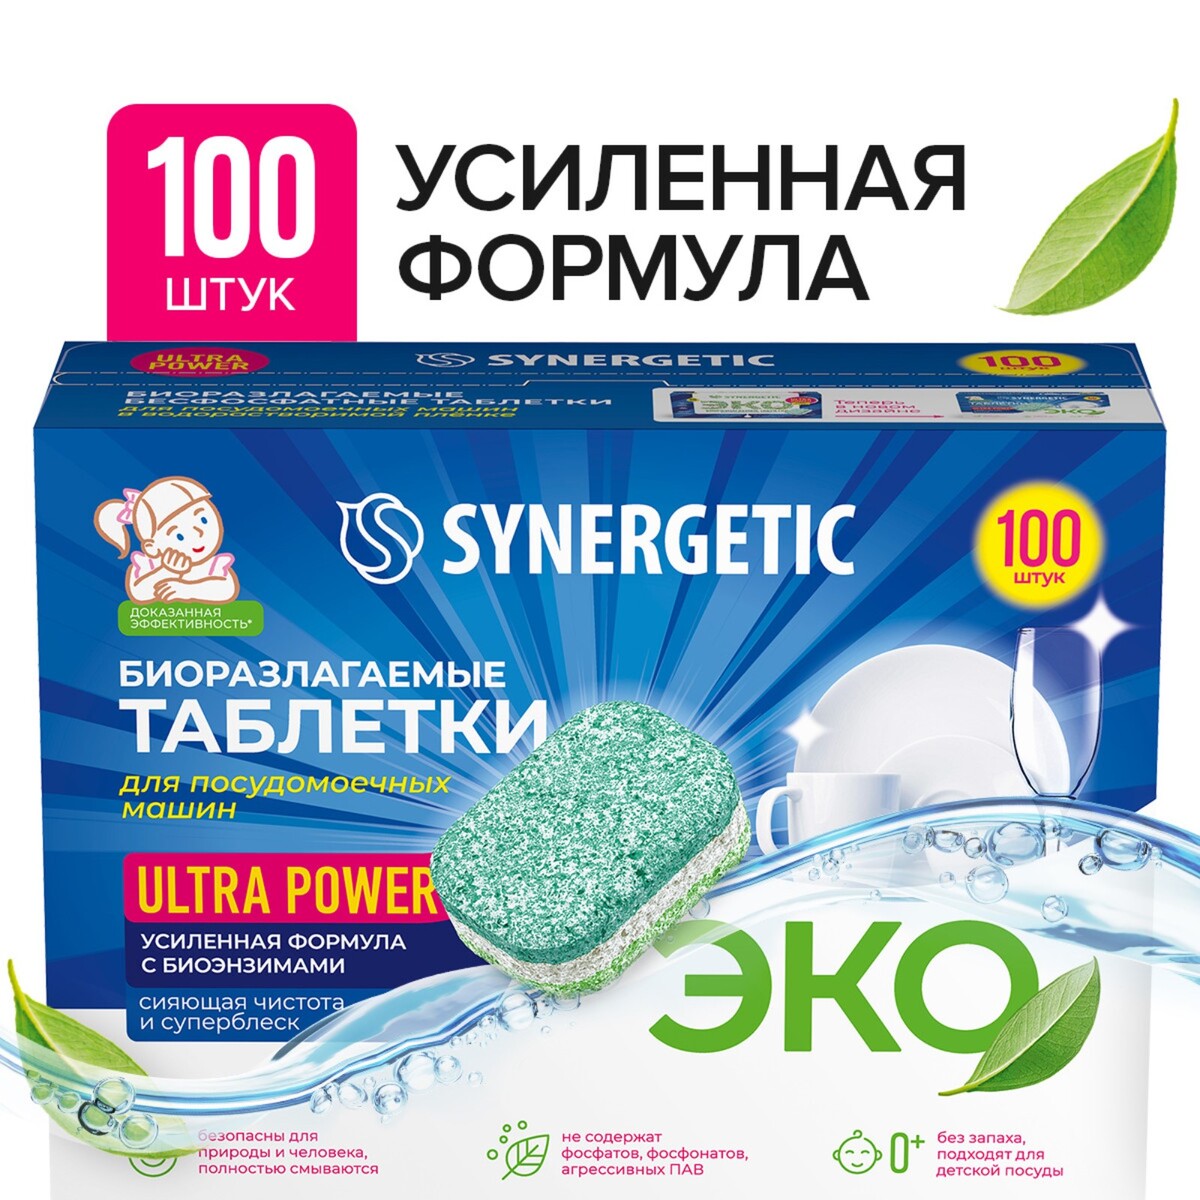 Таблетки для посудомоечных машин synergetic ultra power, бесфосфатные,биоразлагаемые, 100 шт таблетки для посудомоечной машины ушастый нянь 20 шт